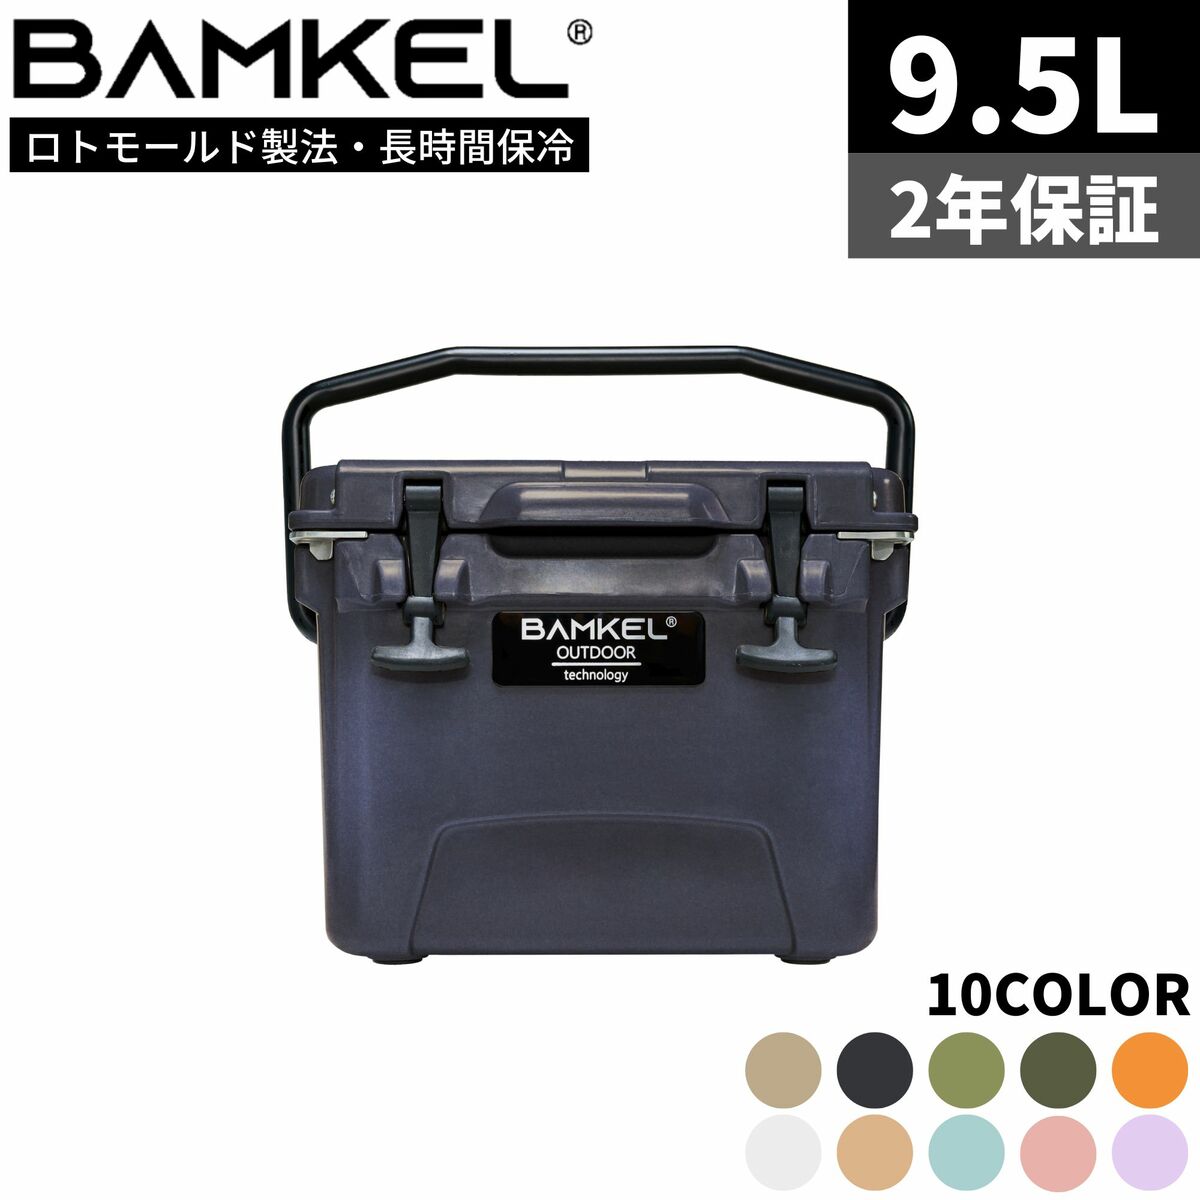 BAMKEL バンケル クーラーボックス 9.5L 長時間 保冷 選べるカラー サイズ 高耐久 ハードクーラー アウトドア キャンプ 韓国ブランド エボニー 正規品